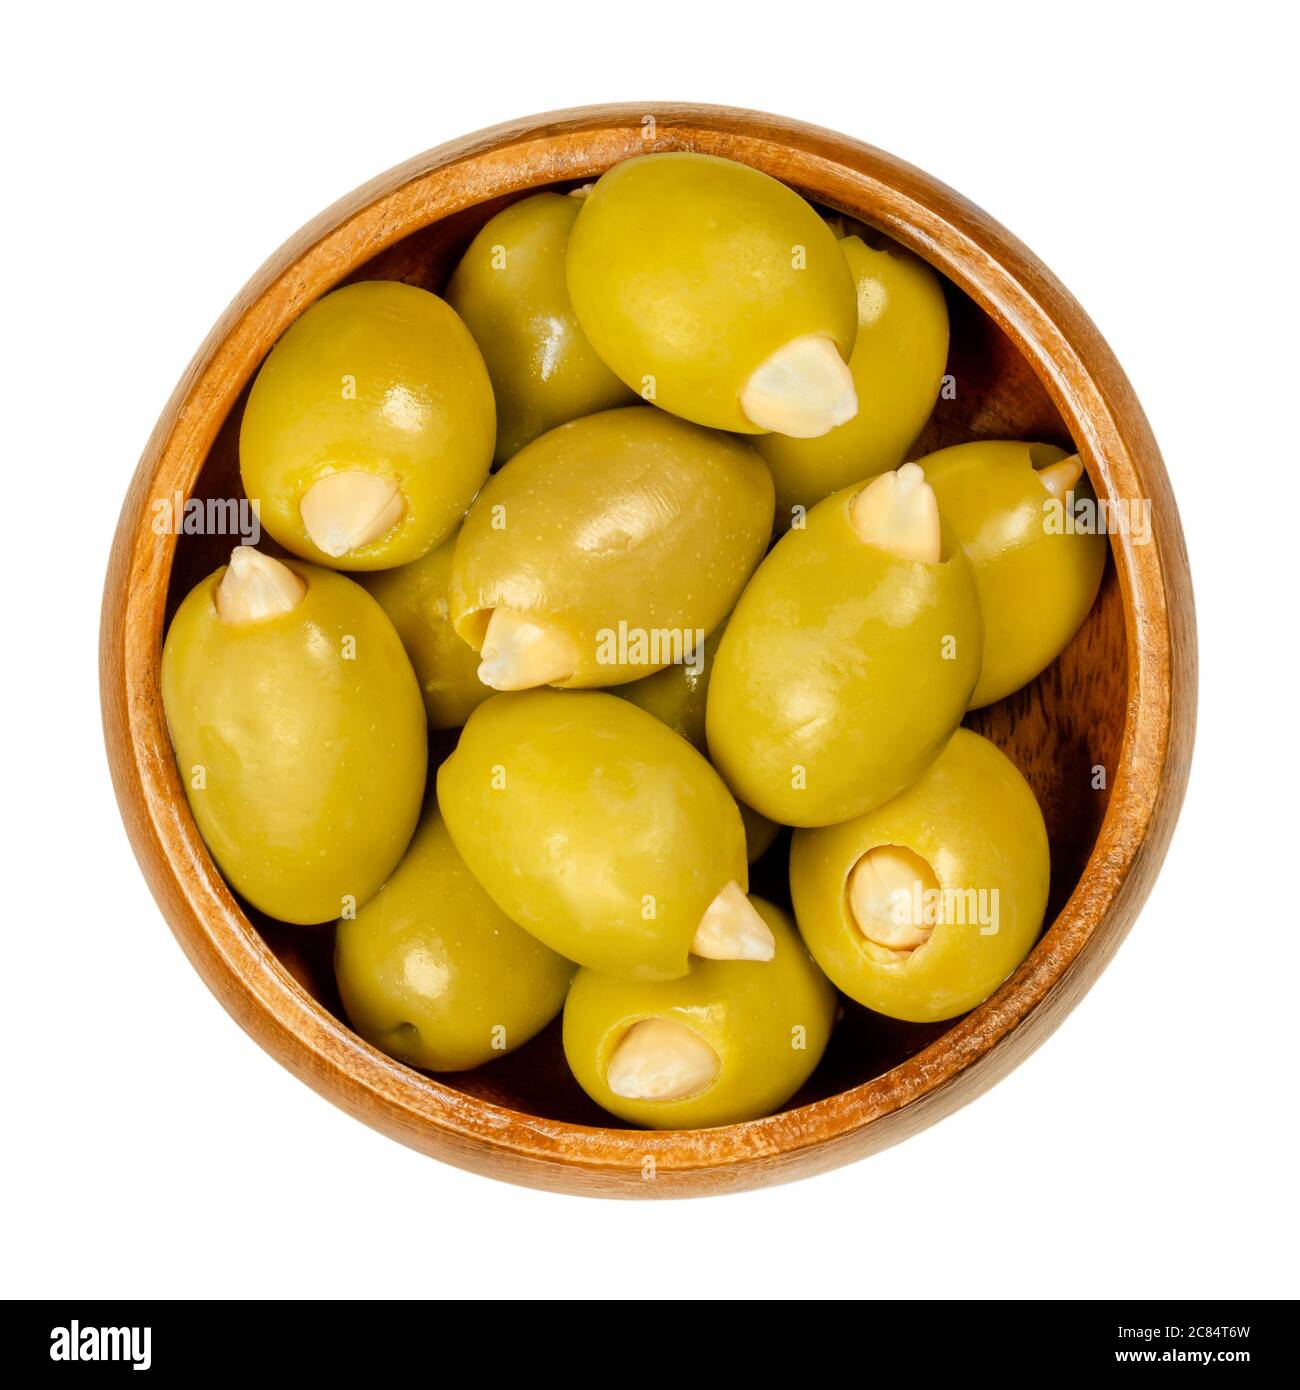 Olives vertes farcies aux amandes dans un bol en bois. Grandes olives européennes, fruits d'Olea europaea, fourrées à la main d'amandes croquantes marinées. Banque D'Images